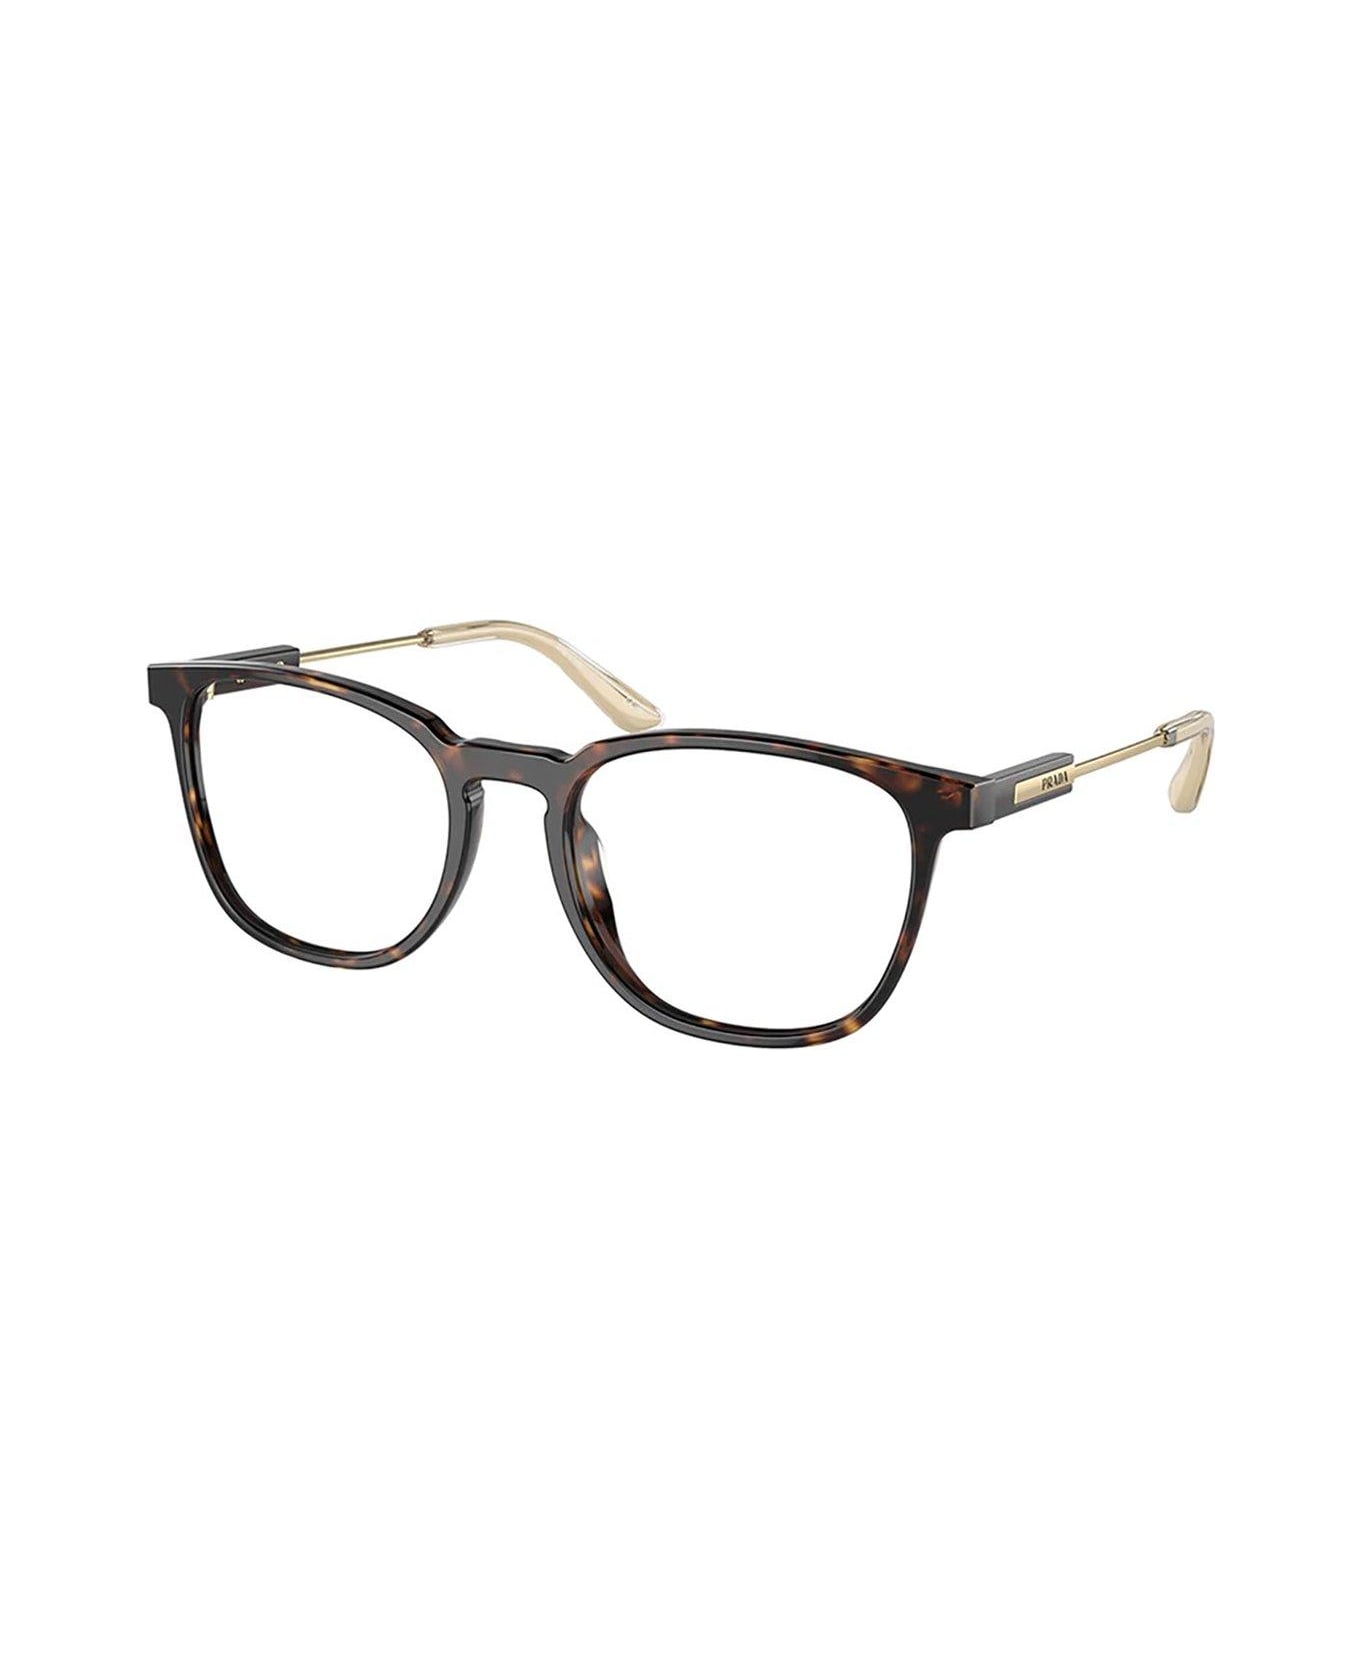 Prada Eyewear Squared Frame Glasses - 2AU1O1 アイウェア